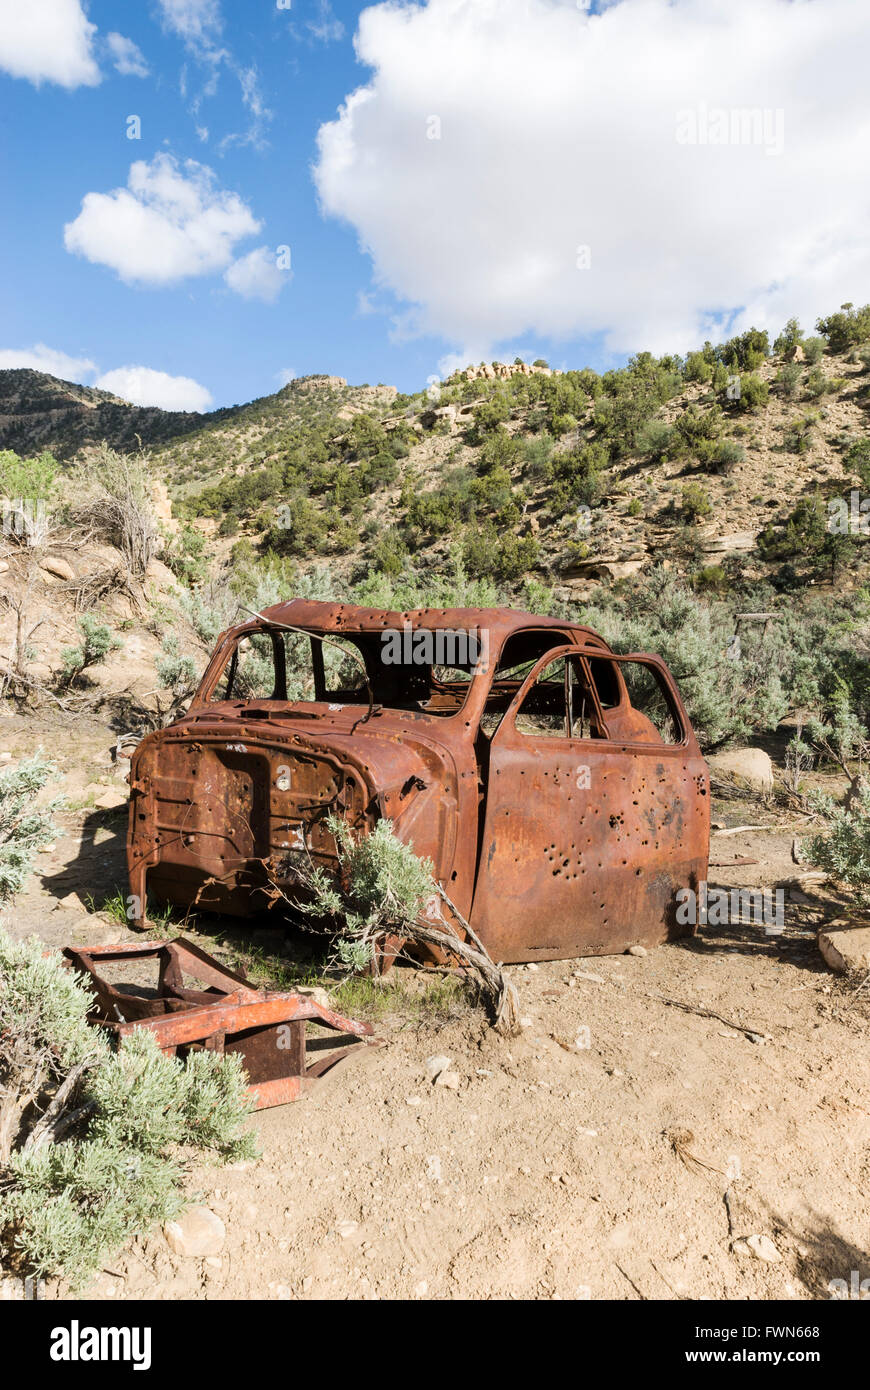 Un automóvil oxidado acribillada de balas se encuentra cerca de la ciudad fantasma de Sego oxidados, Utah, EE.UU. Foto de stock